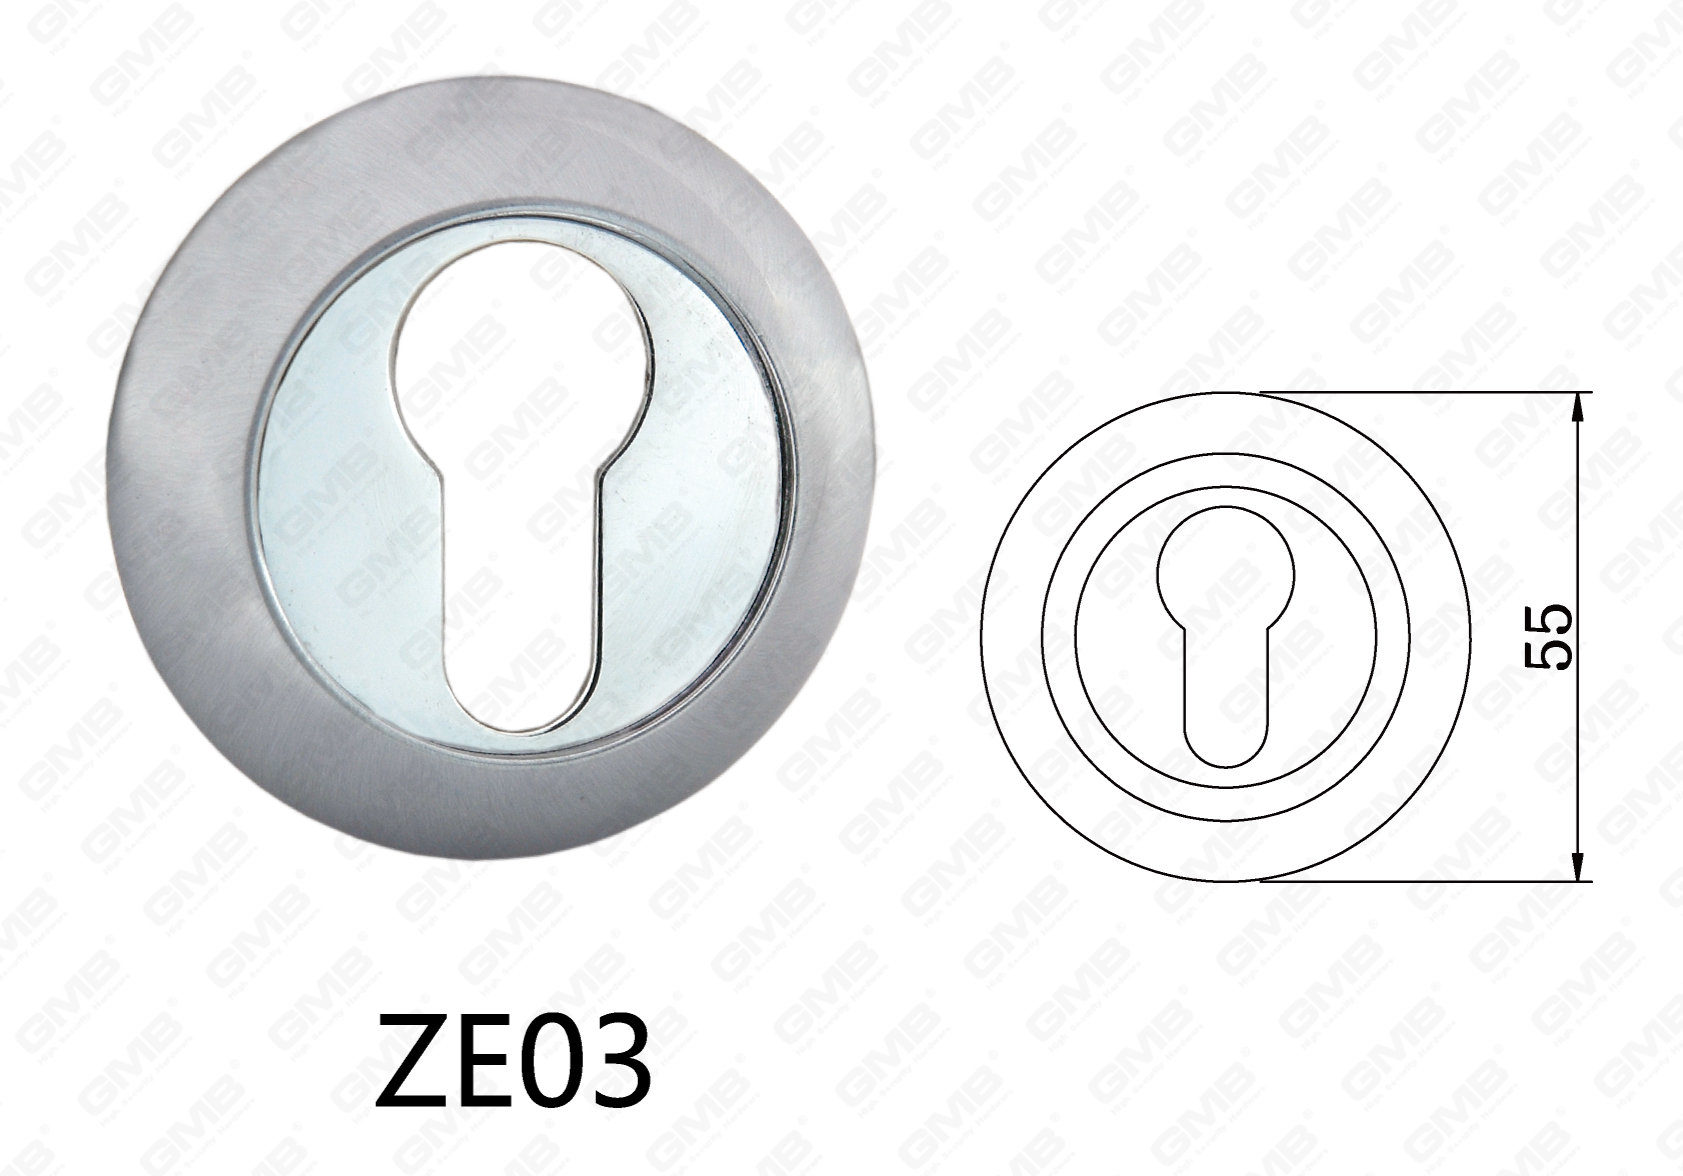 ידית דלת דלת אלומיניום מסגסוגת אבץ Zamak עגולה (ZE03)